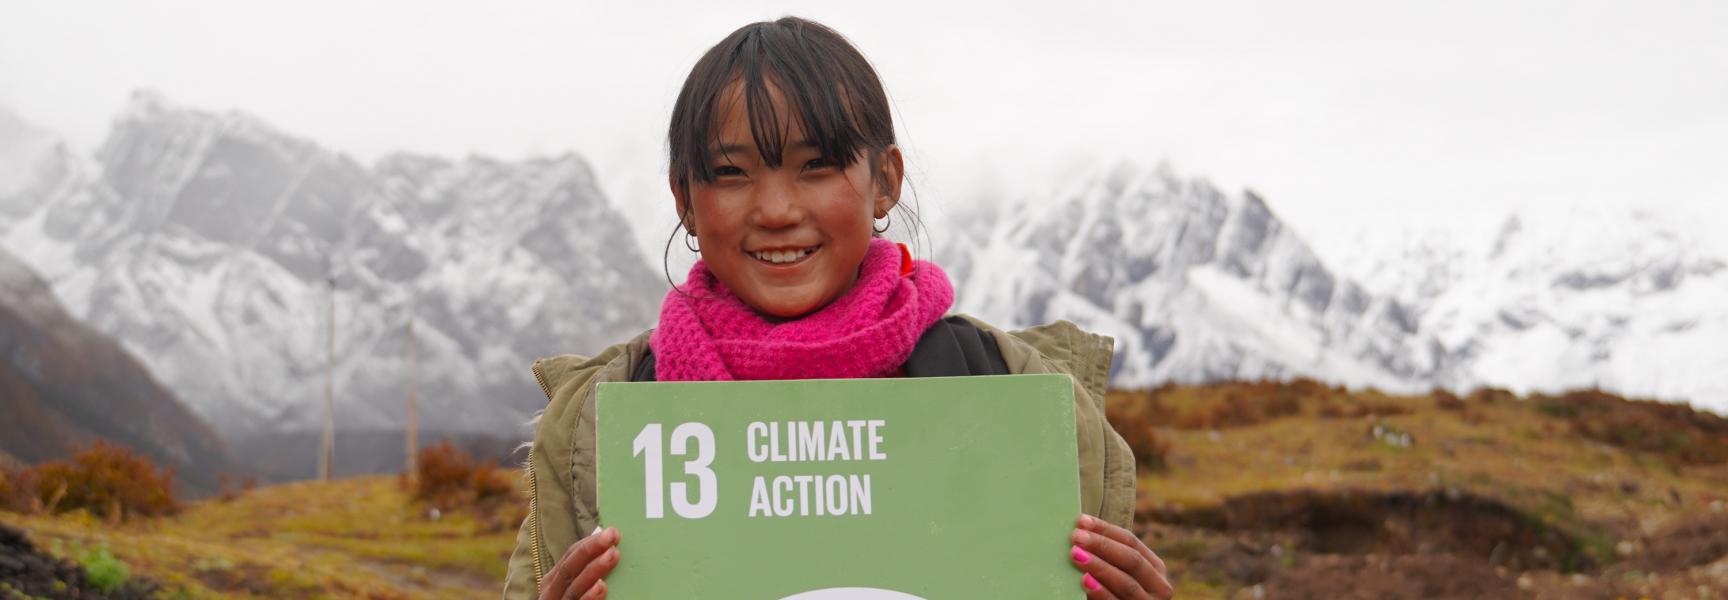 Action climatique au Bhutan